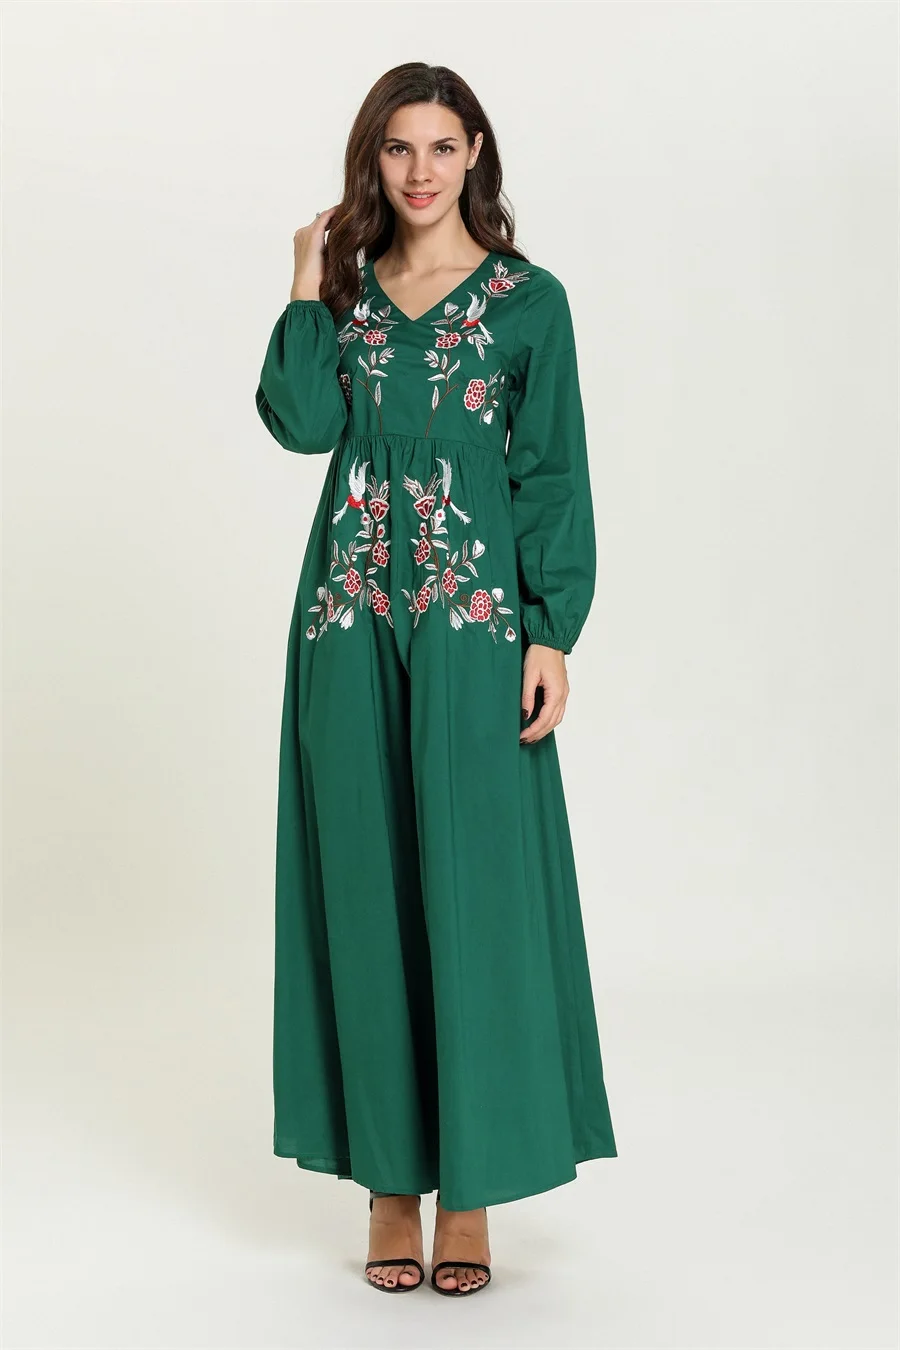 Siskakia винтажное ТРАПЕЦИЕВИДНОЕ длинное платье с v-образным вырезом, Повседневное платье с длинным рукавом и цветочной вышивкой, Аравийский халат, осень, качественная ткань